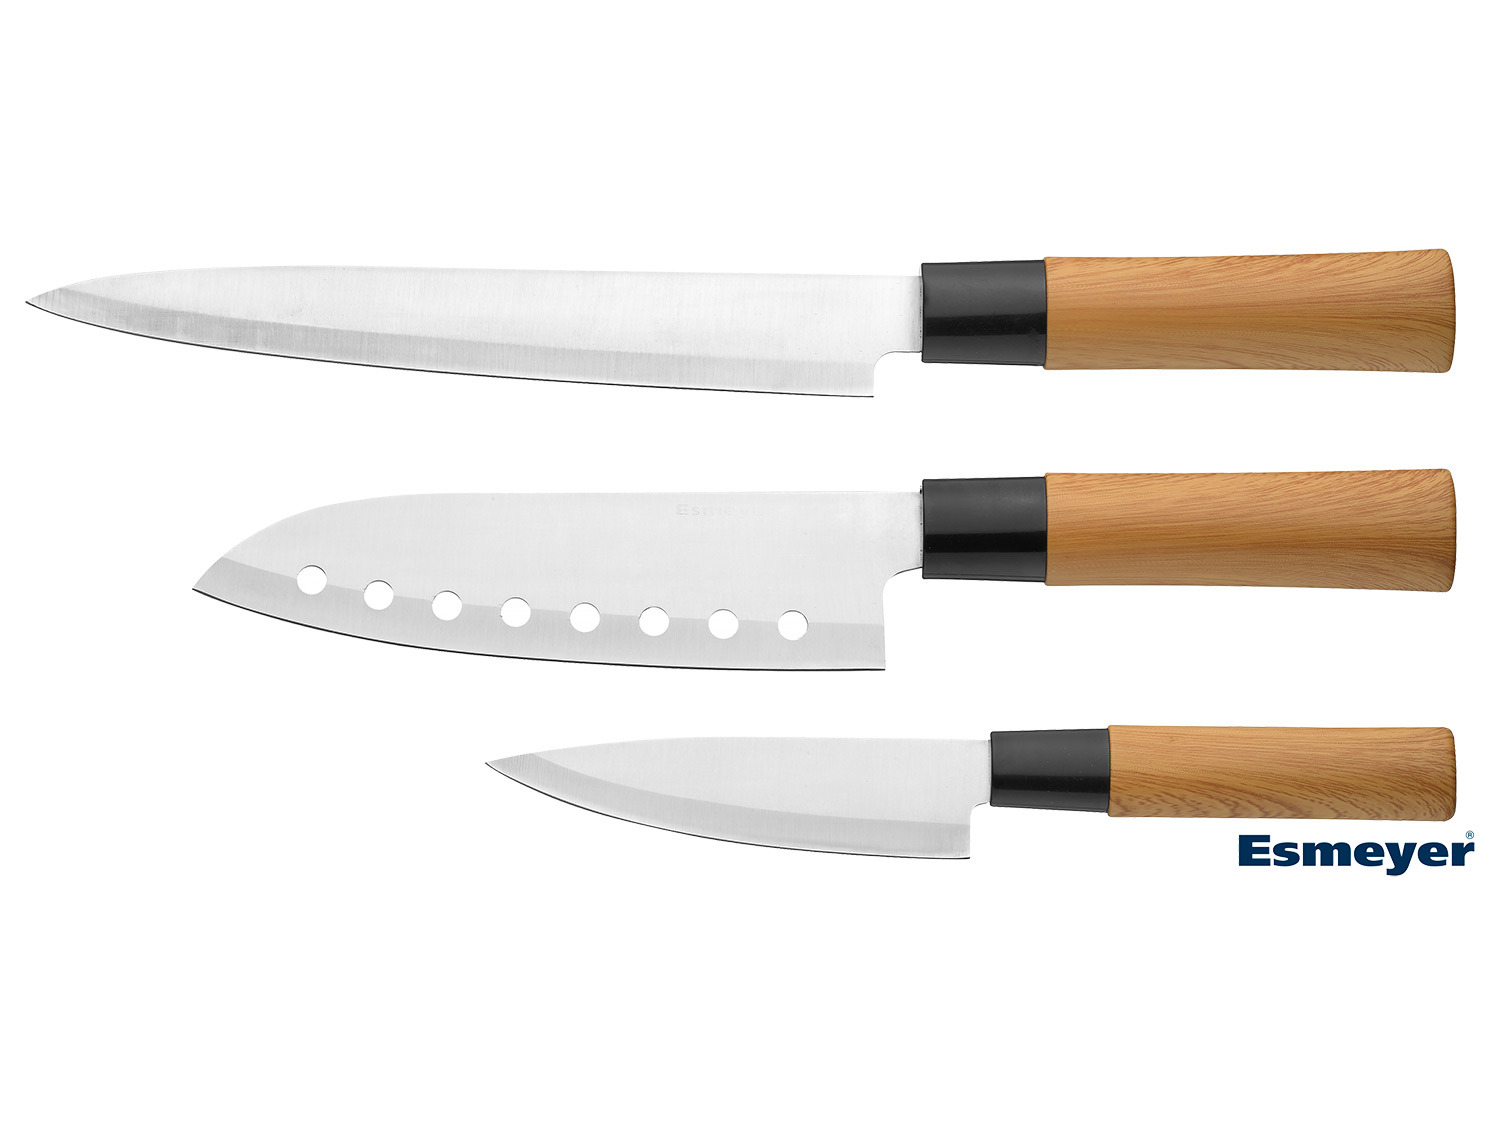 3 Stil tlg. asiatischen Messerset im Esmeyer LIDL |